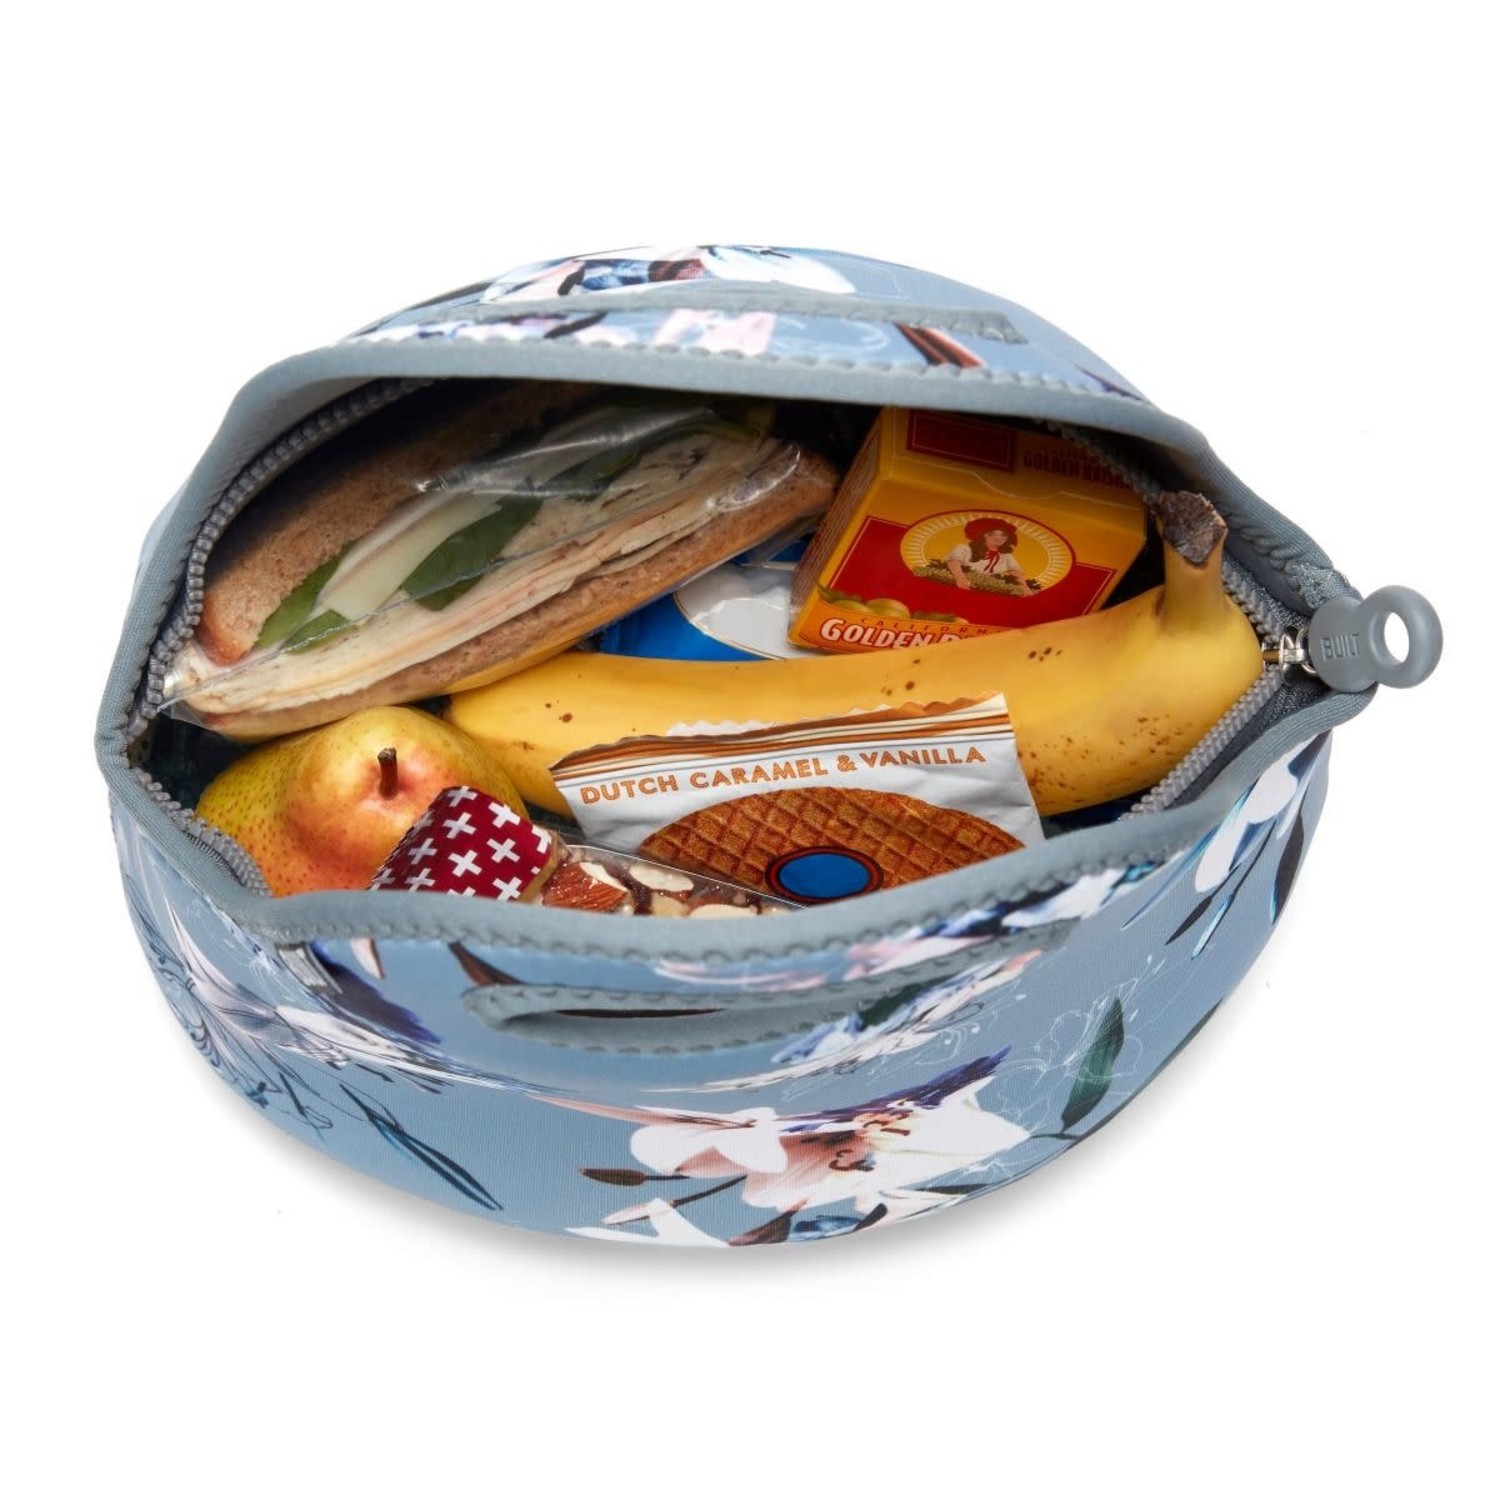 https://cdn.shoplightspeed.com/shops/633447/files/18784706/1500x4000x3/built-pewter-lunch-bag.jpg